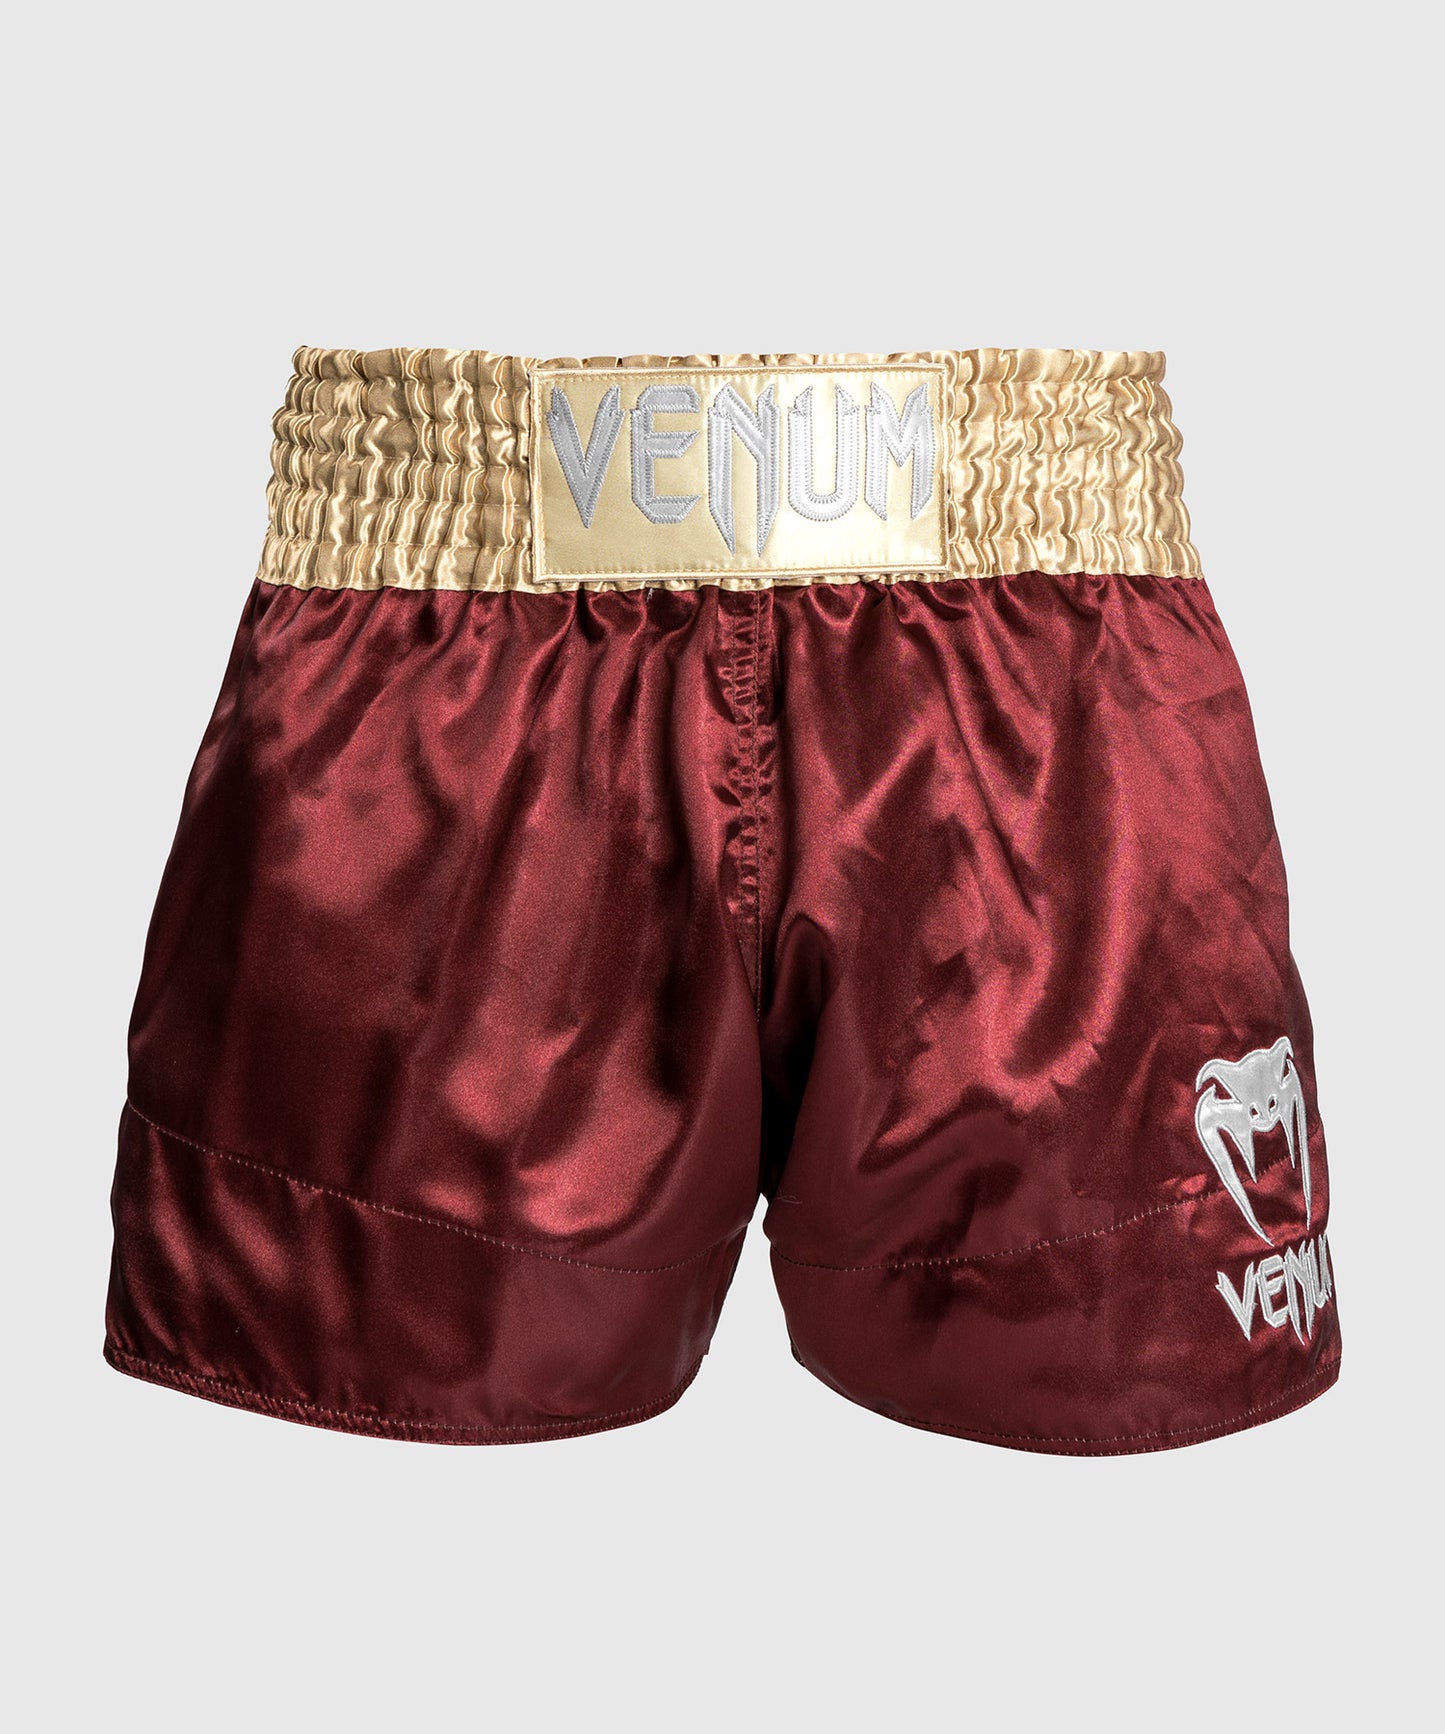 Venum Classic Muay Thai Shorts - Burgund/Gold/Weiß